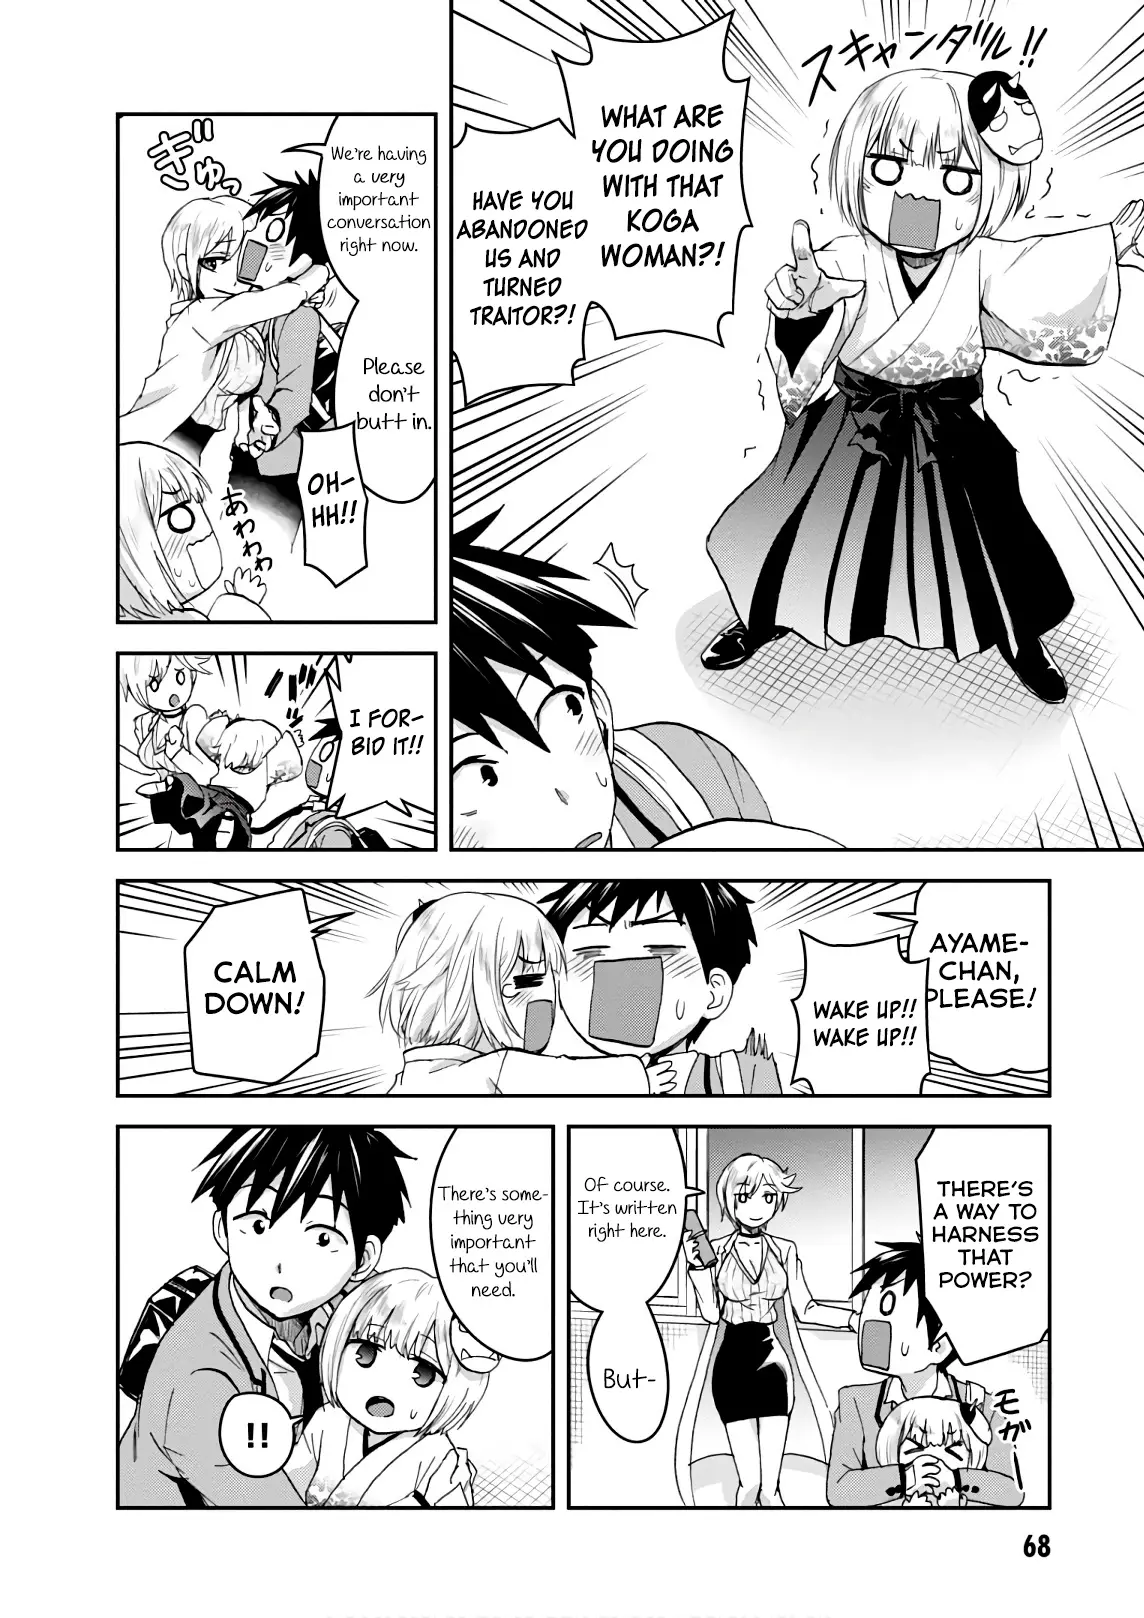 Shinobi Kill - 12 page 4-797e0f78